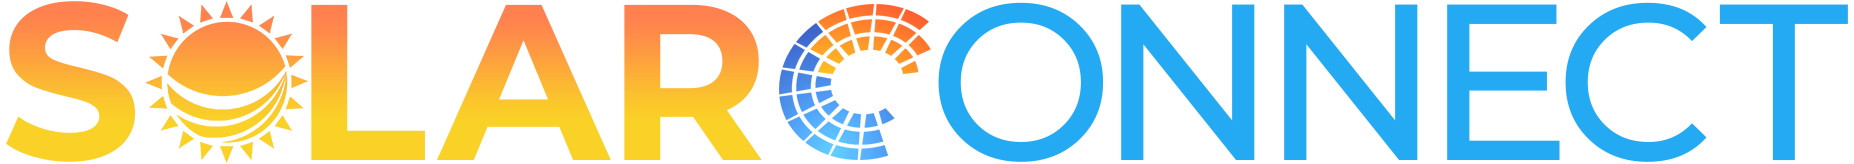 Solar-Connect-Logo